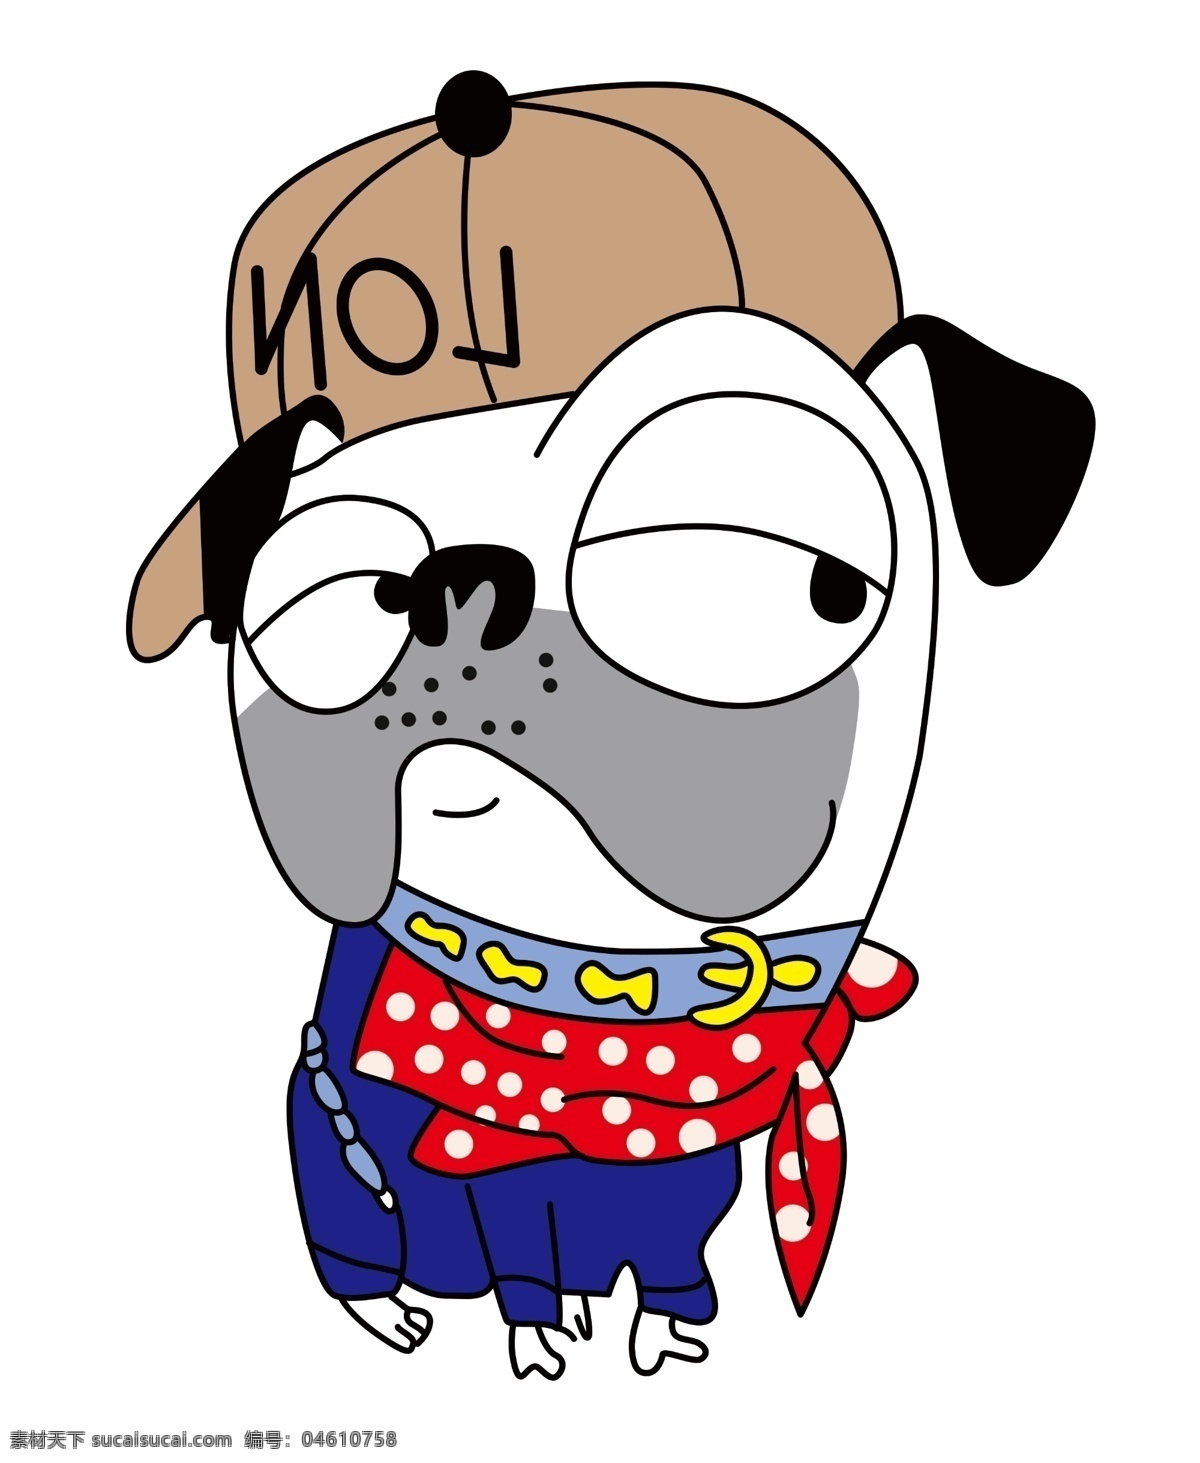 卡通狗图片 卡通 帽子狗 可爱 烫画 印花 好图共享 动漫动画 动漫人物